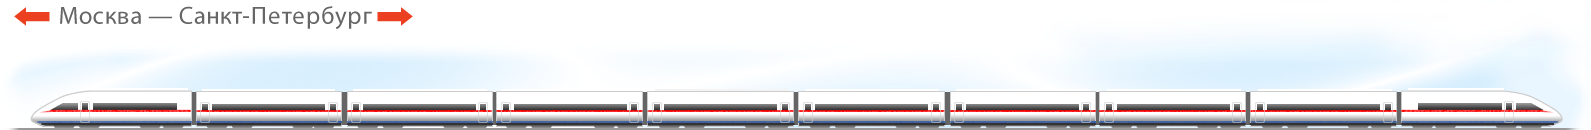 схема вагонов поезда «Сапсан», расположение мест в «Сапсан»е